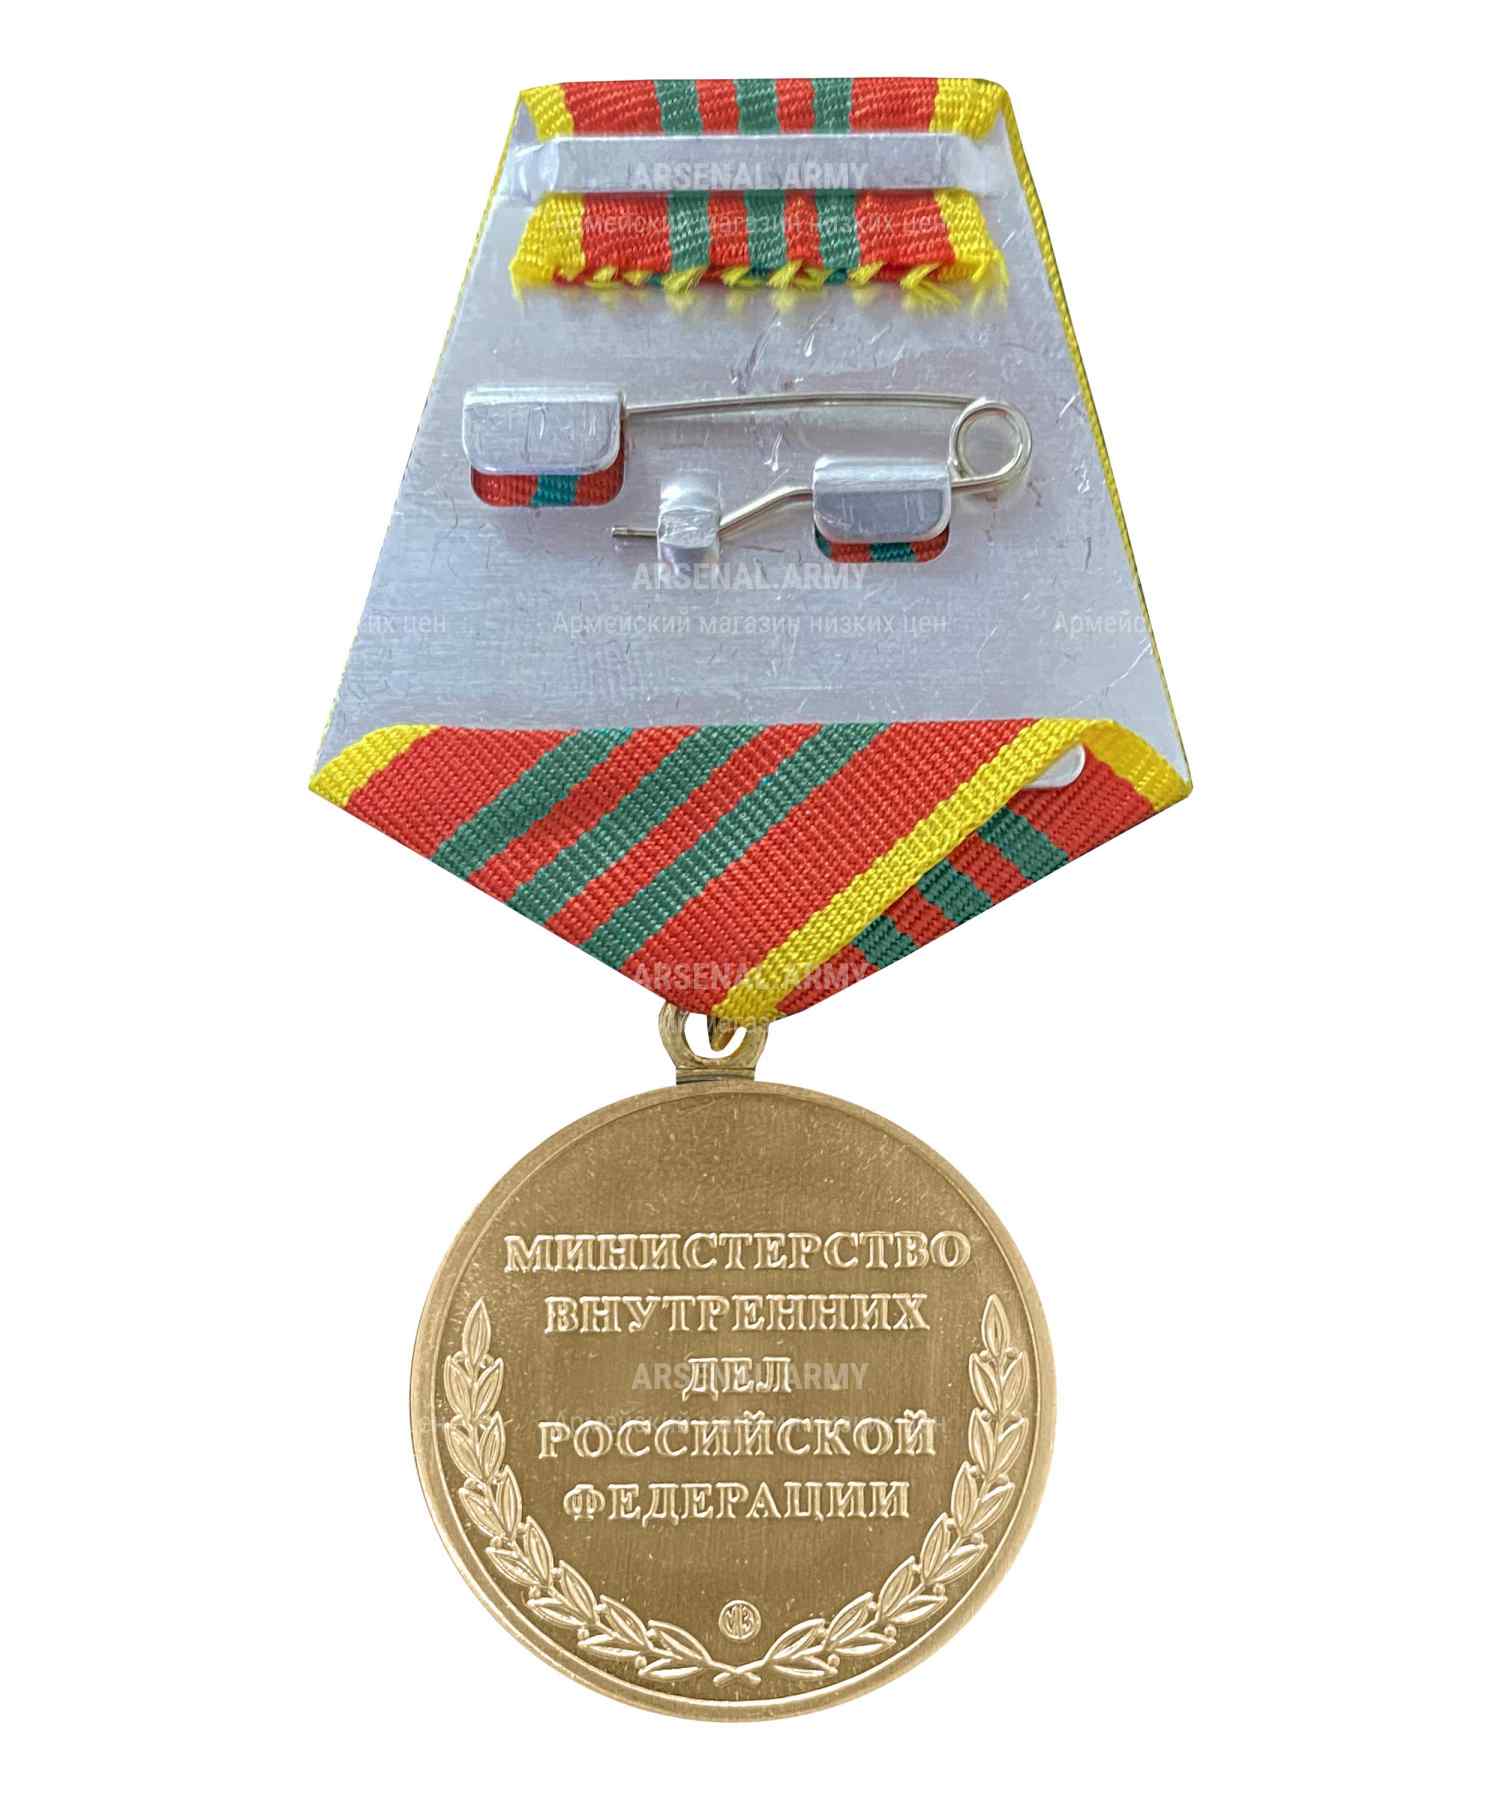 Медаль МВД "За отличие в службе" 3 степени